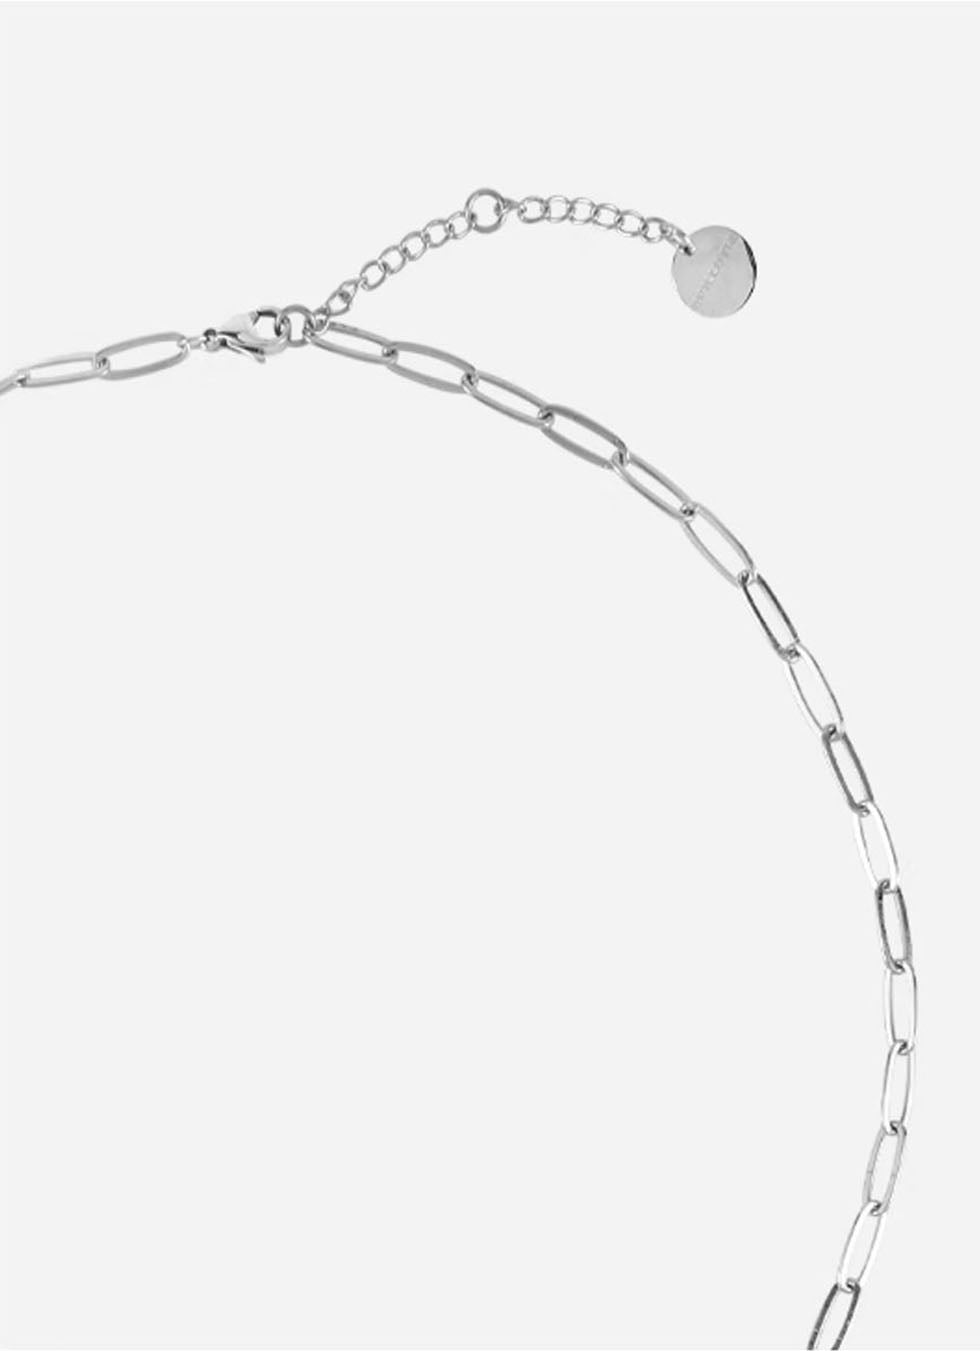 Irregular bean shaped long cross necklace